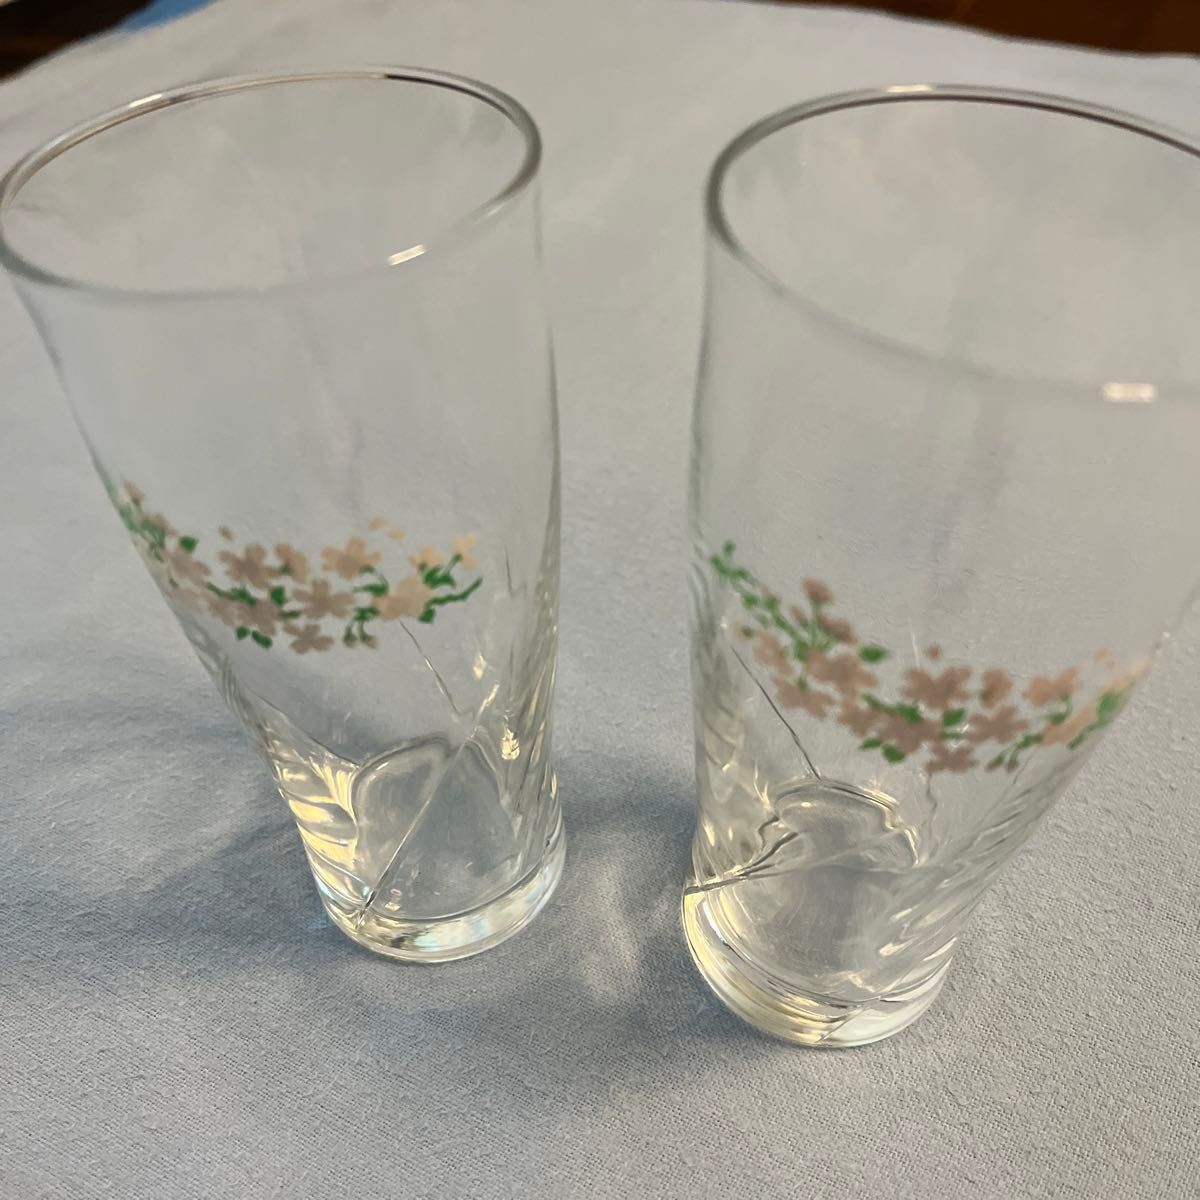 キリンビールのグラス2個セットです。冷たいビールを注ぐと花の色が変わります。未使用品ですが、箱の劣化は否めません。